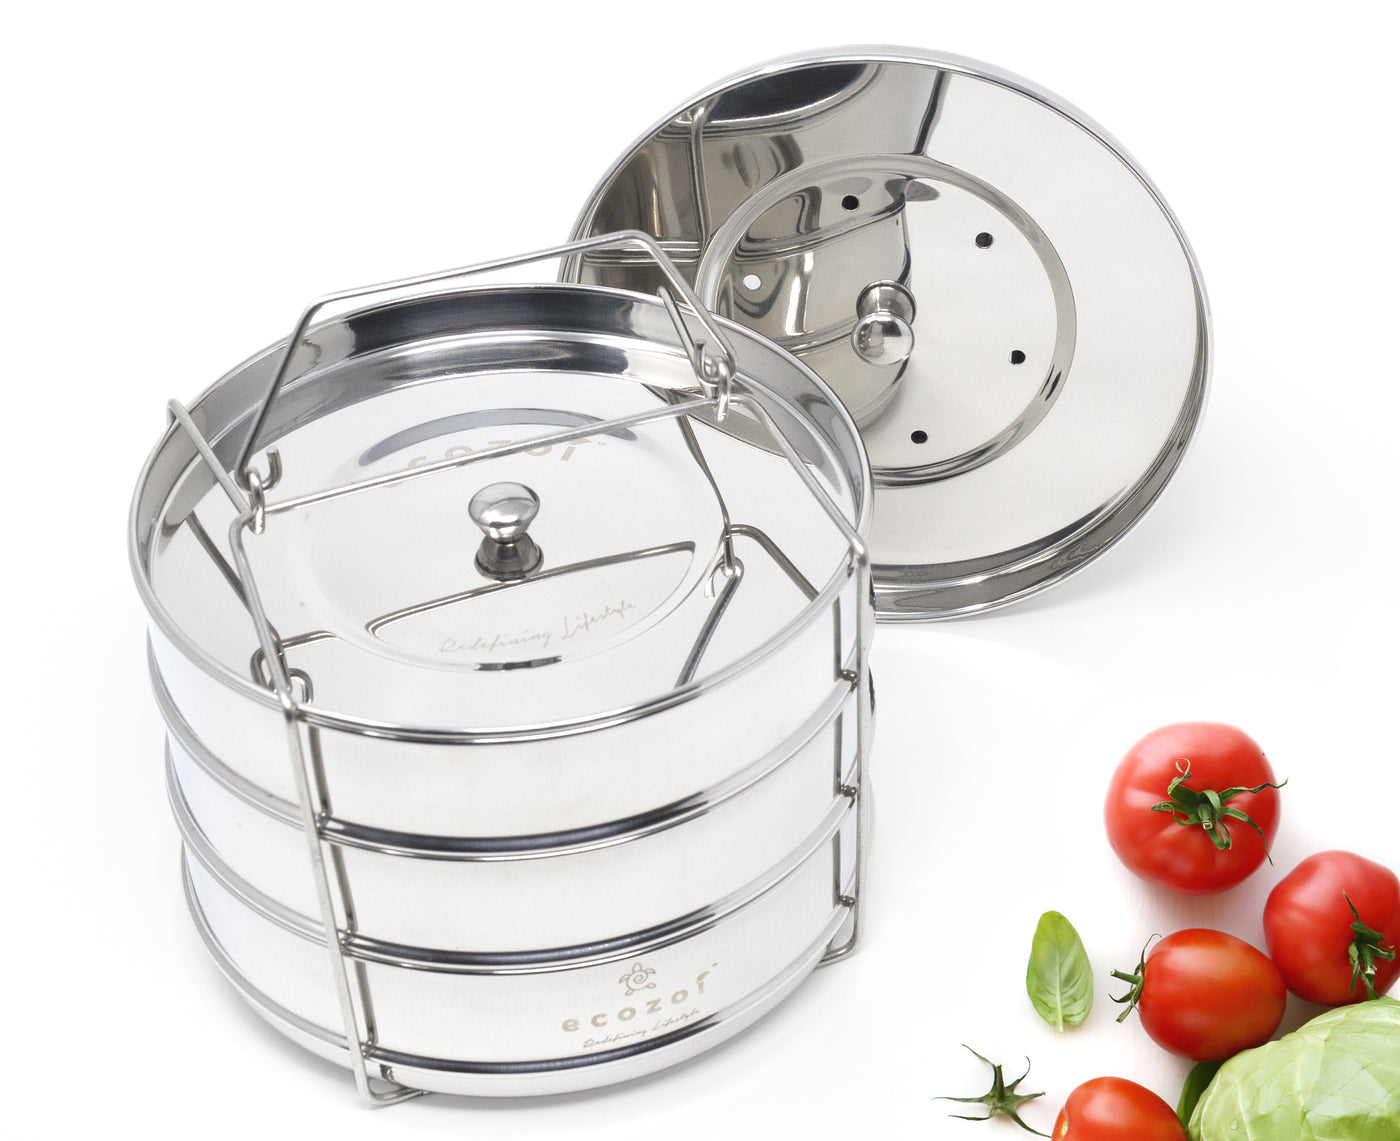 Instant Pot Insert Pans, 3 Tier for 6 Qt / 8 Qt Pressure Cookers